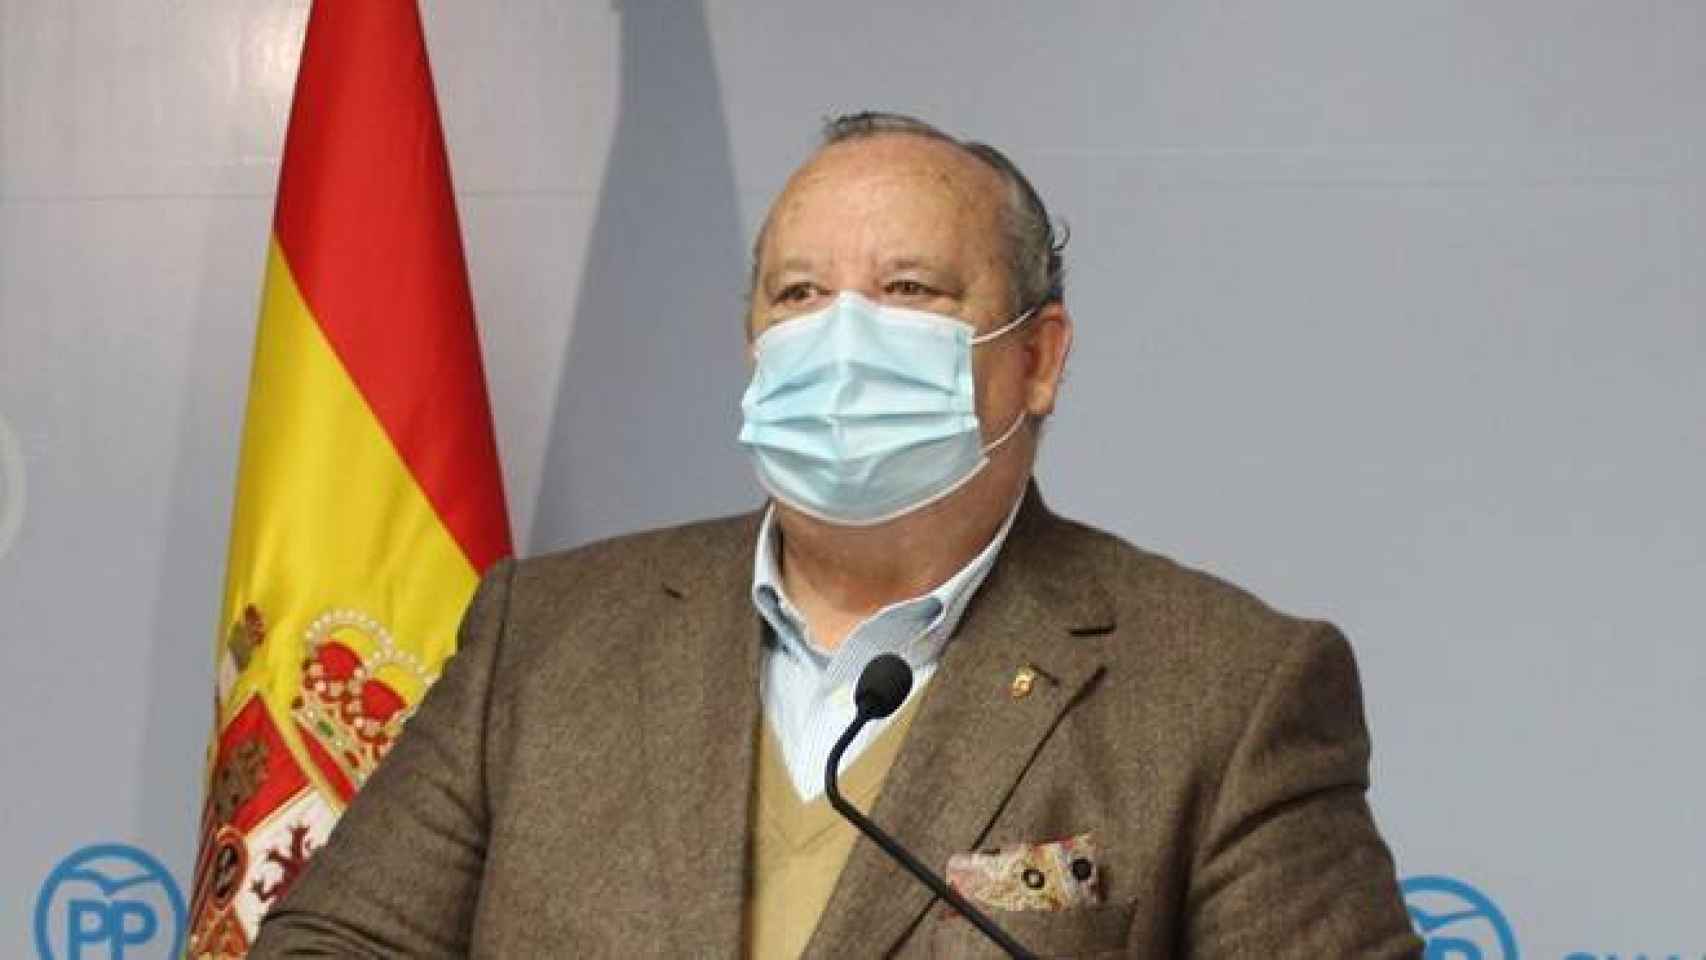 José Luis González Lamola, senador del PP por Guadalajara